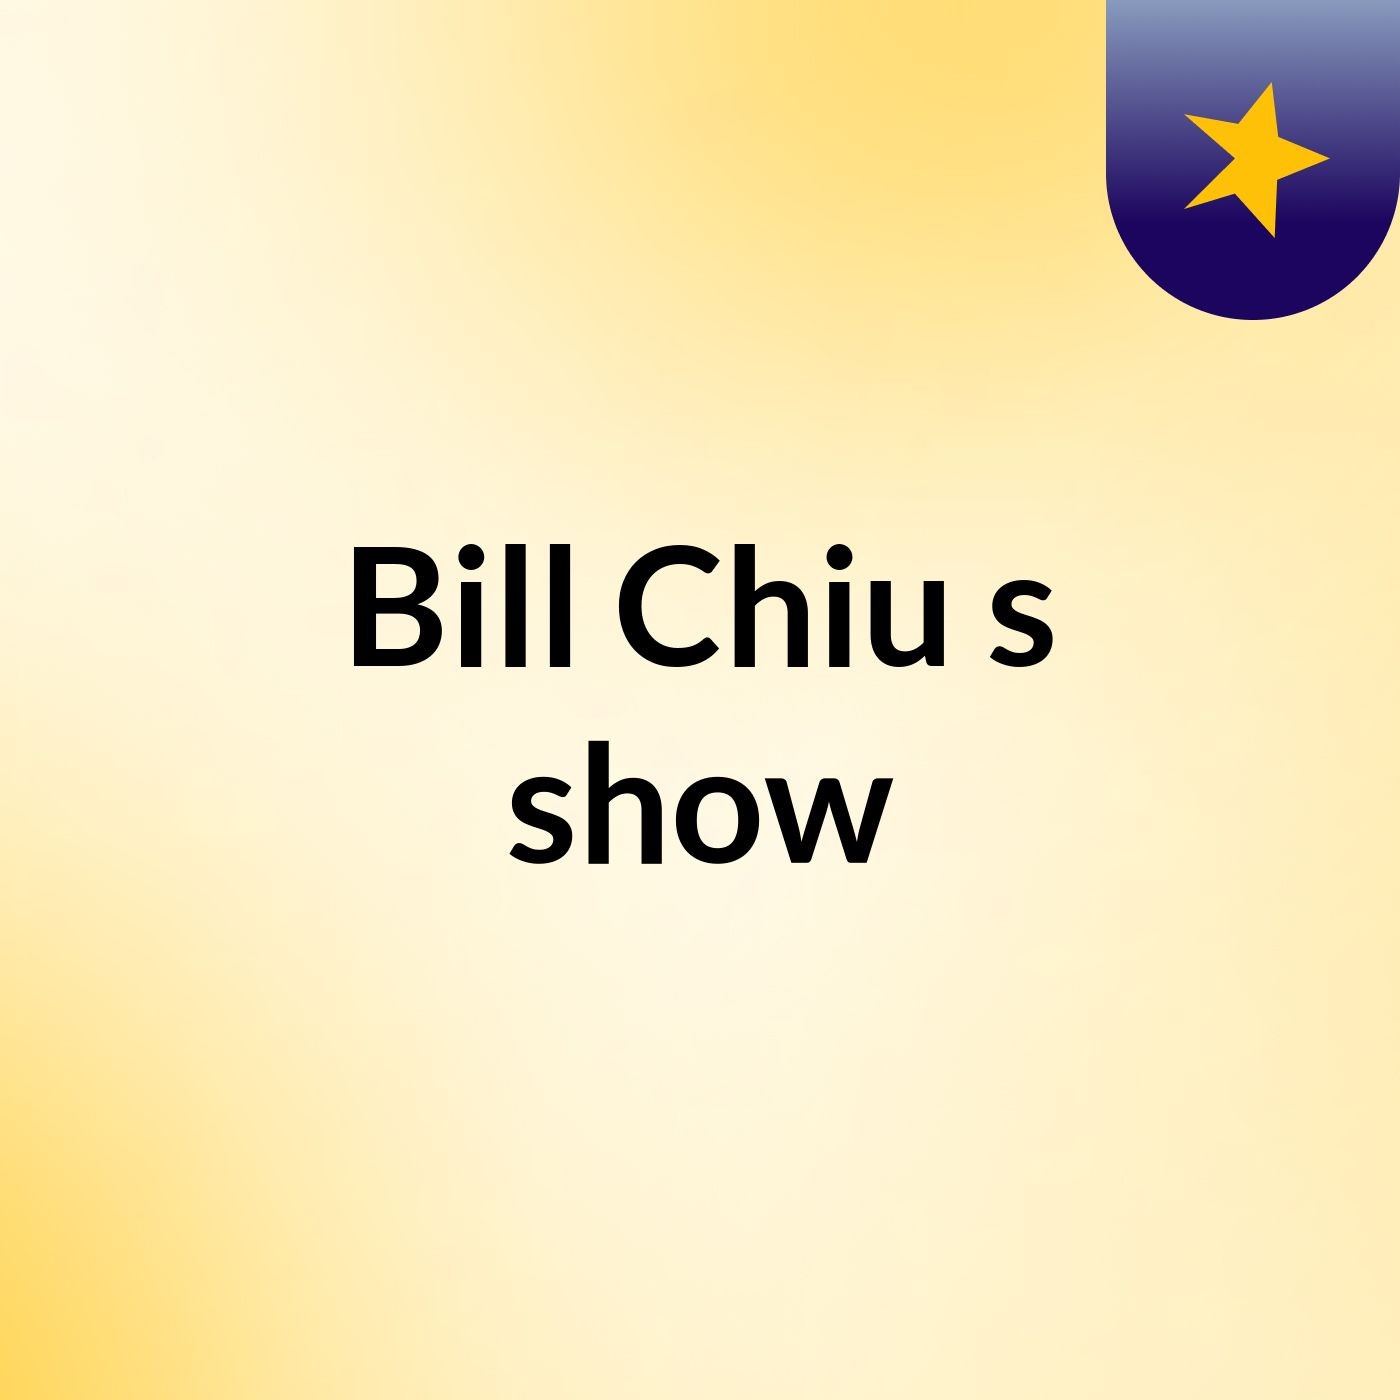 Bill Chiu's show